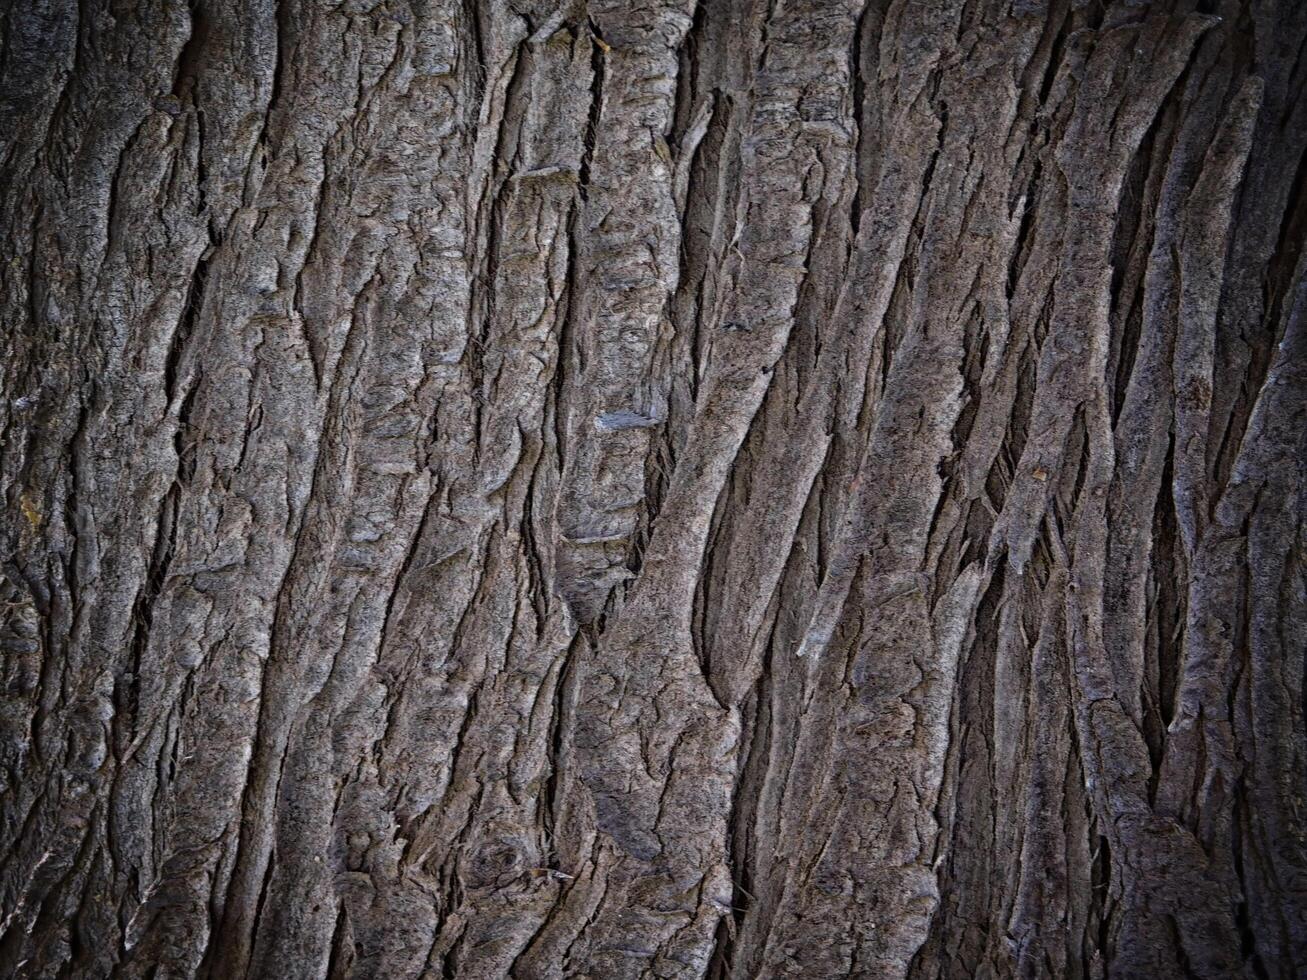 Dark Wood Texture In The Garden photo